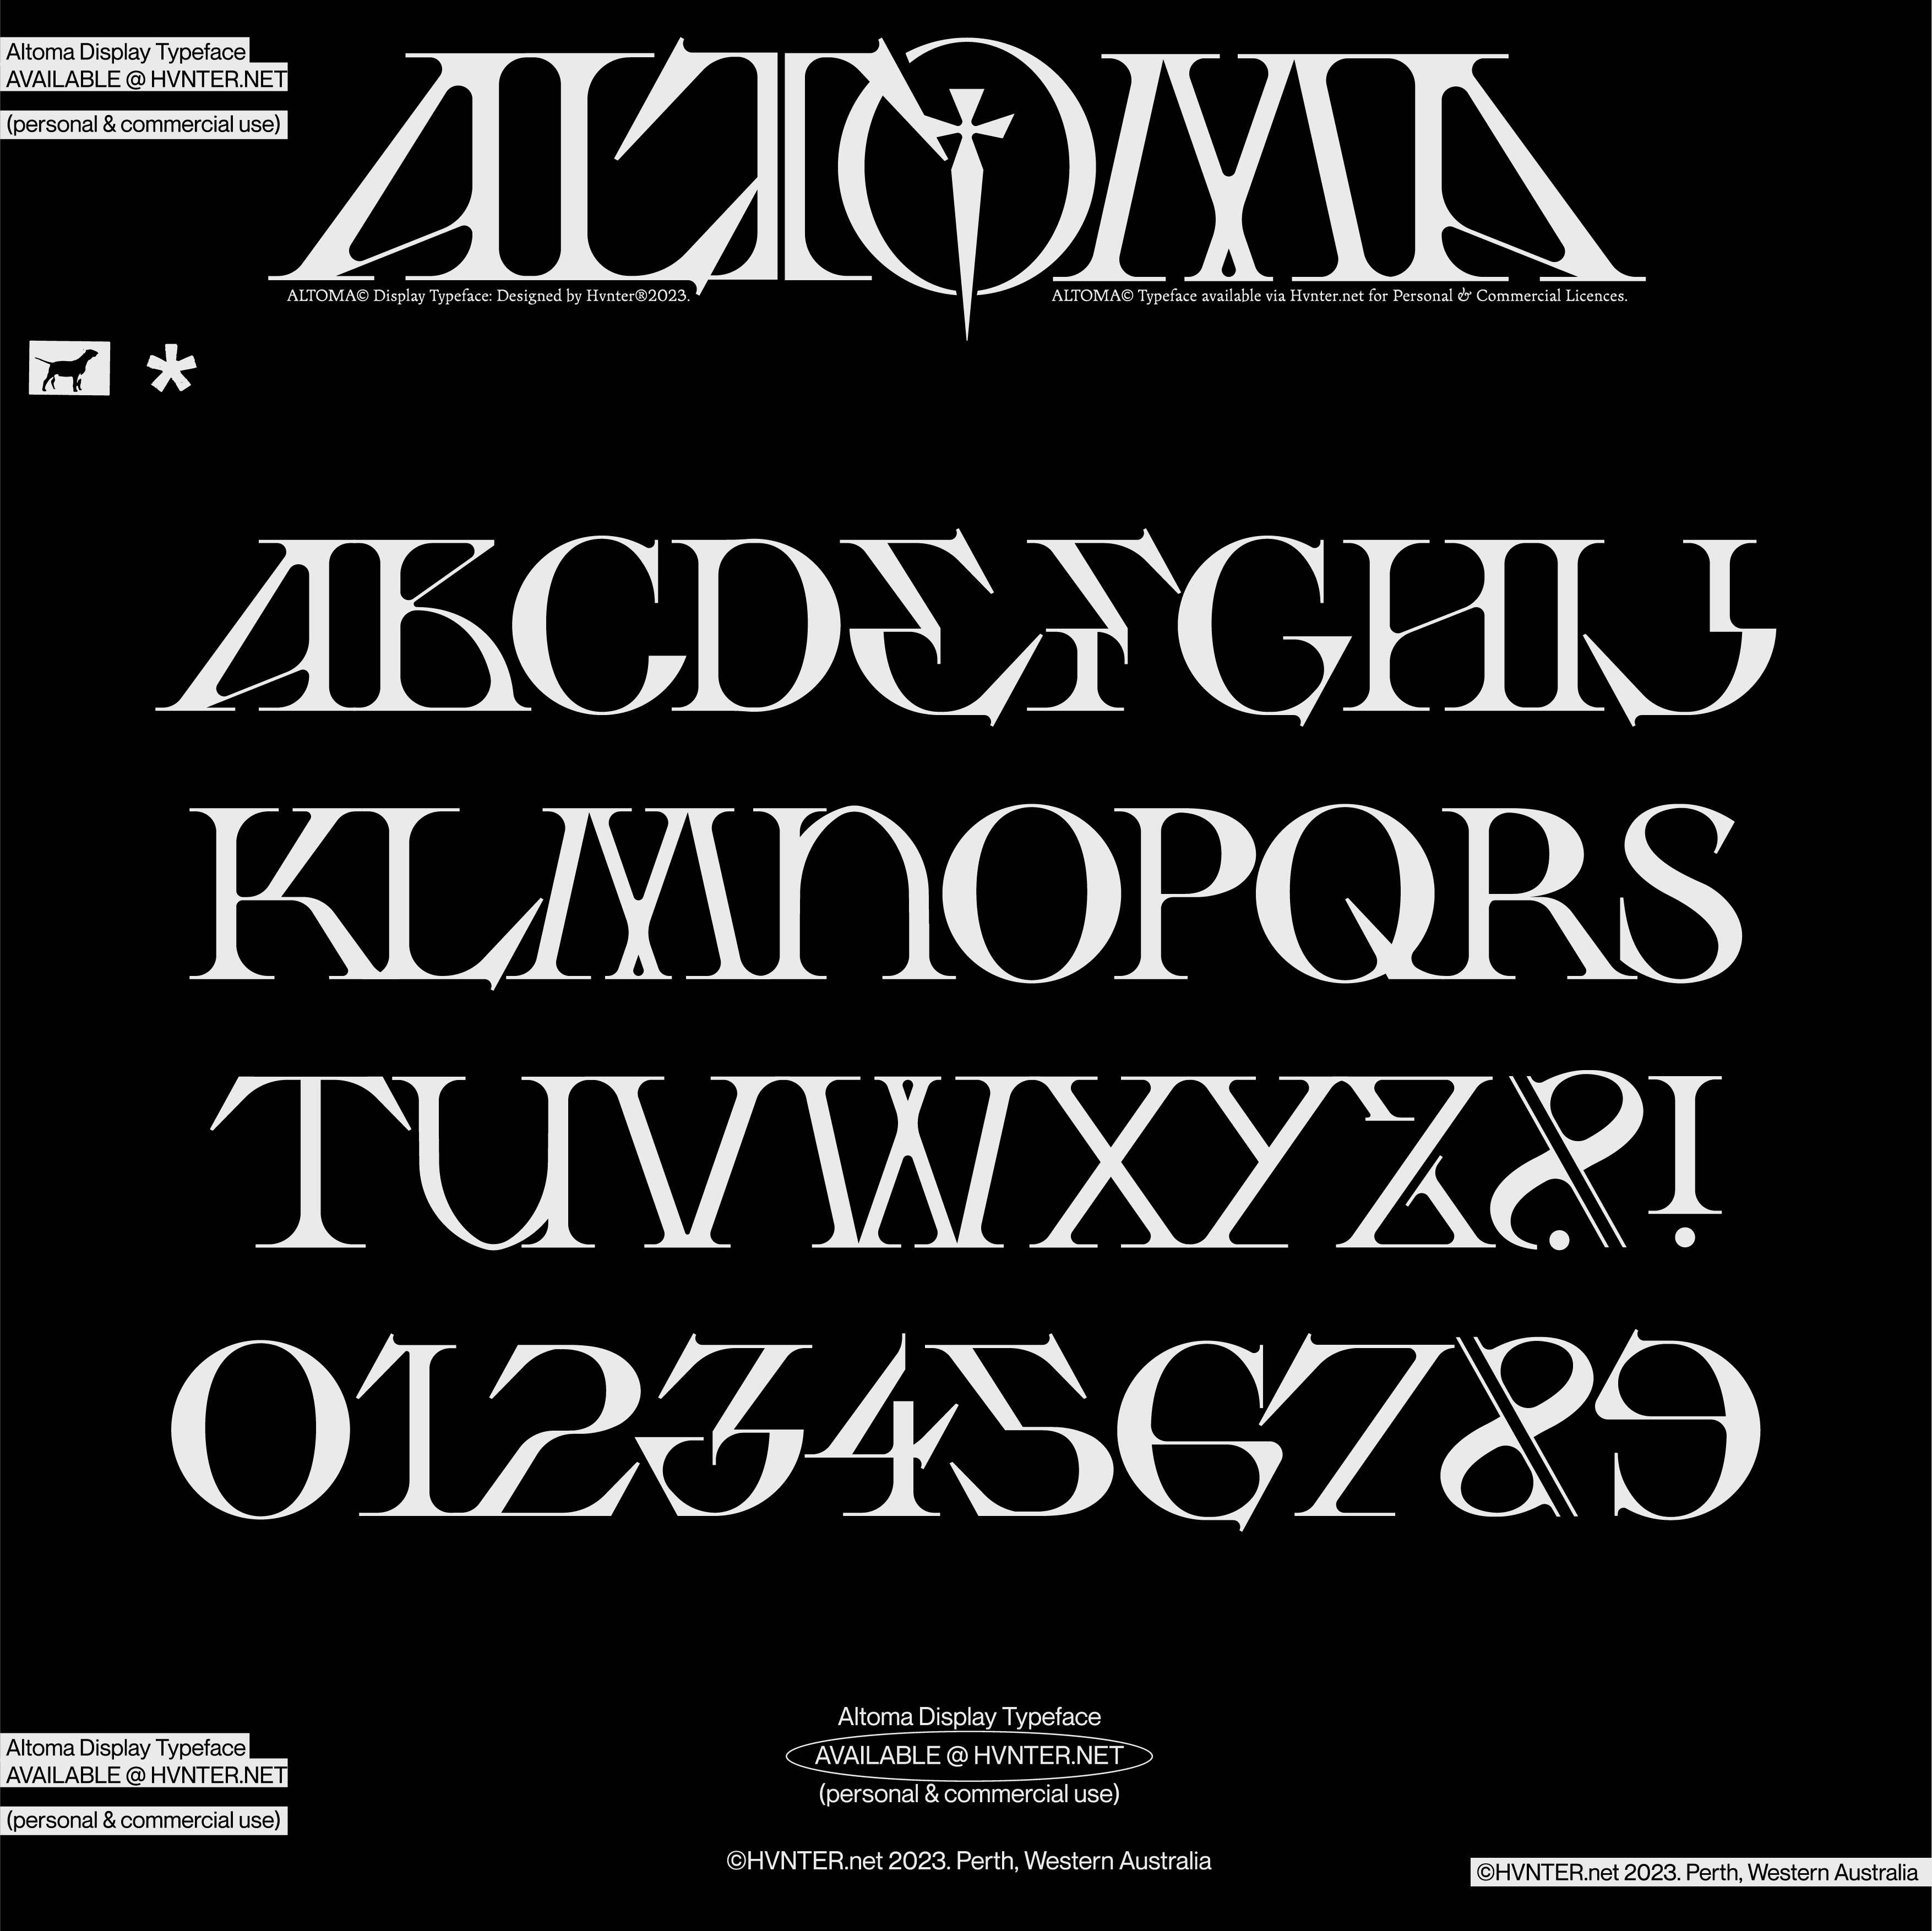 Altoma Typeface